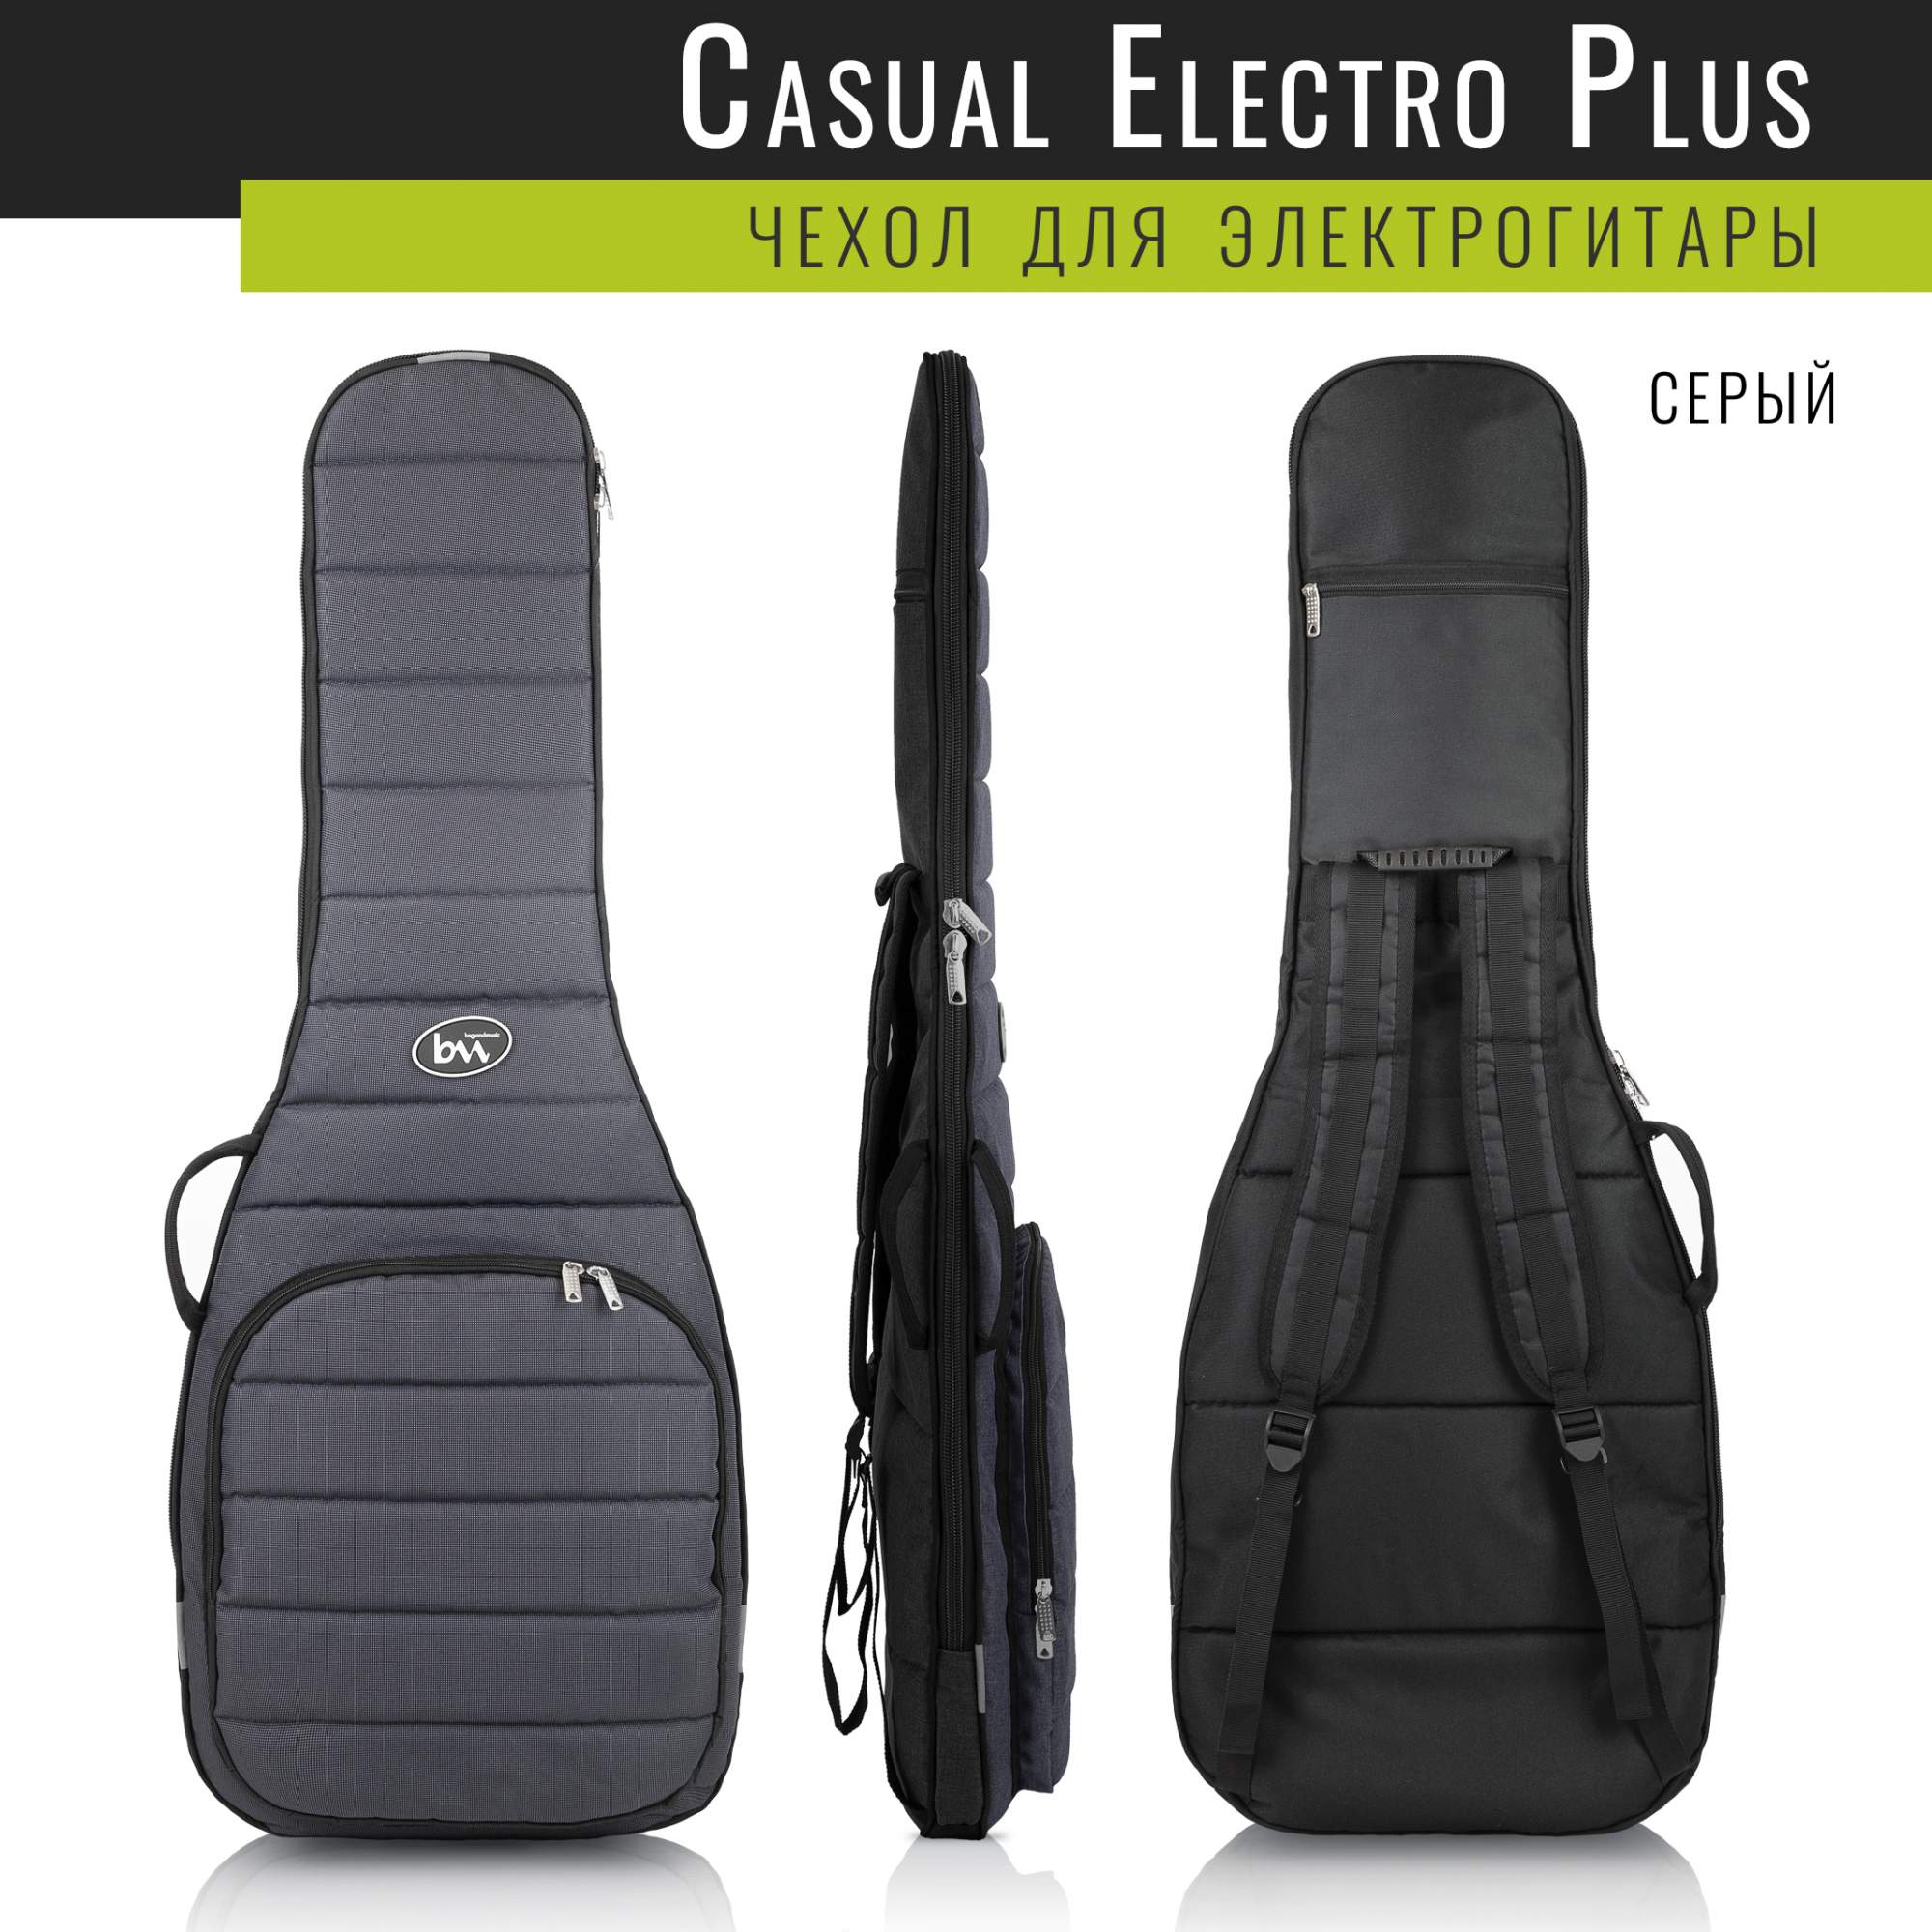 Чехол для электрогитары Bagandmusic Electro Casual Plus серый